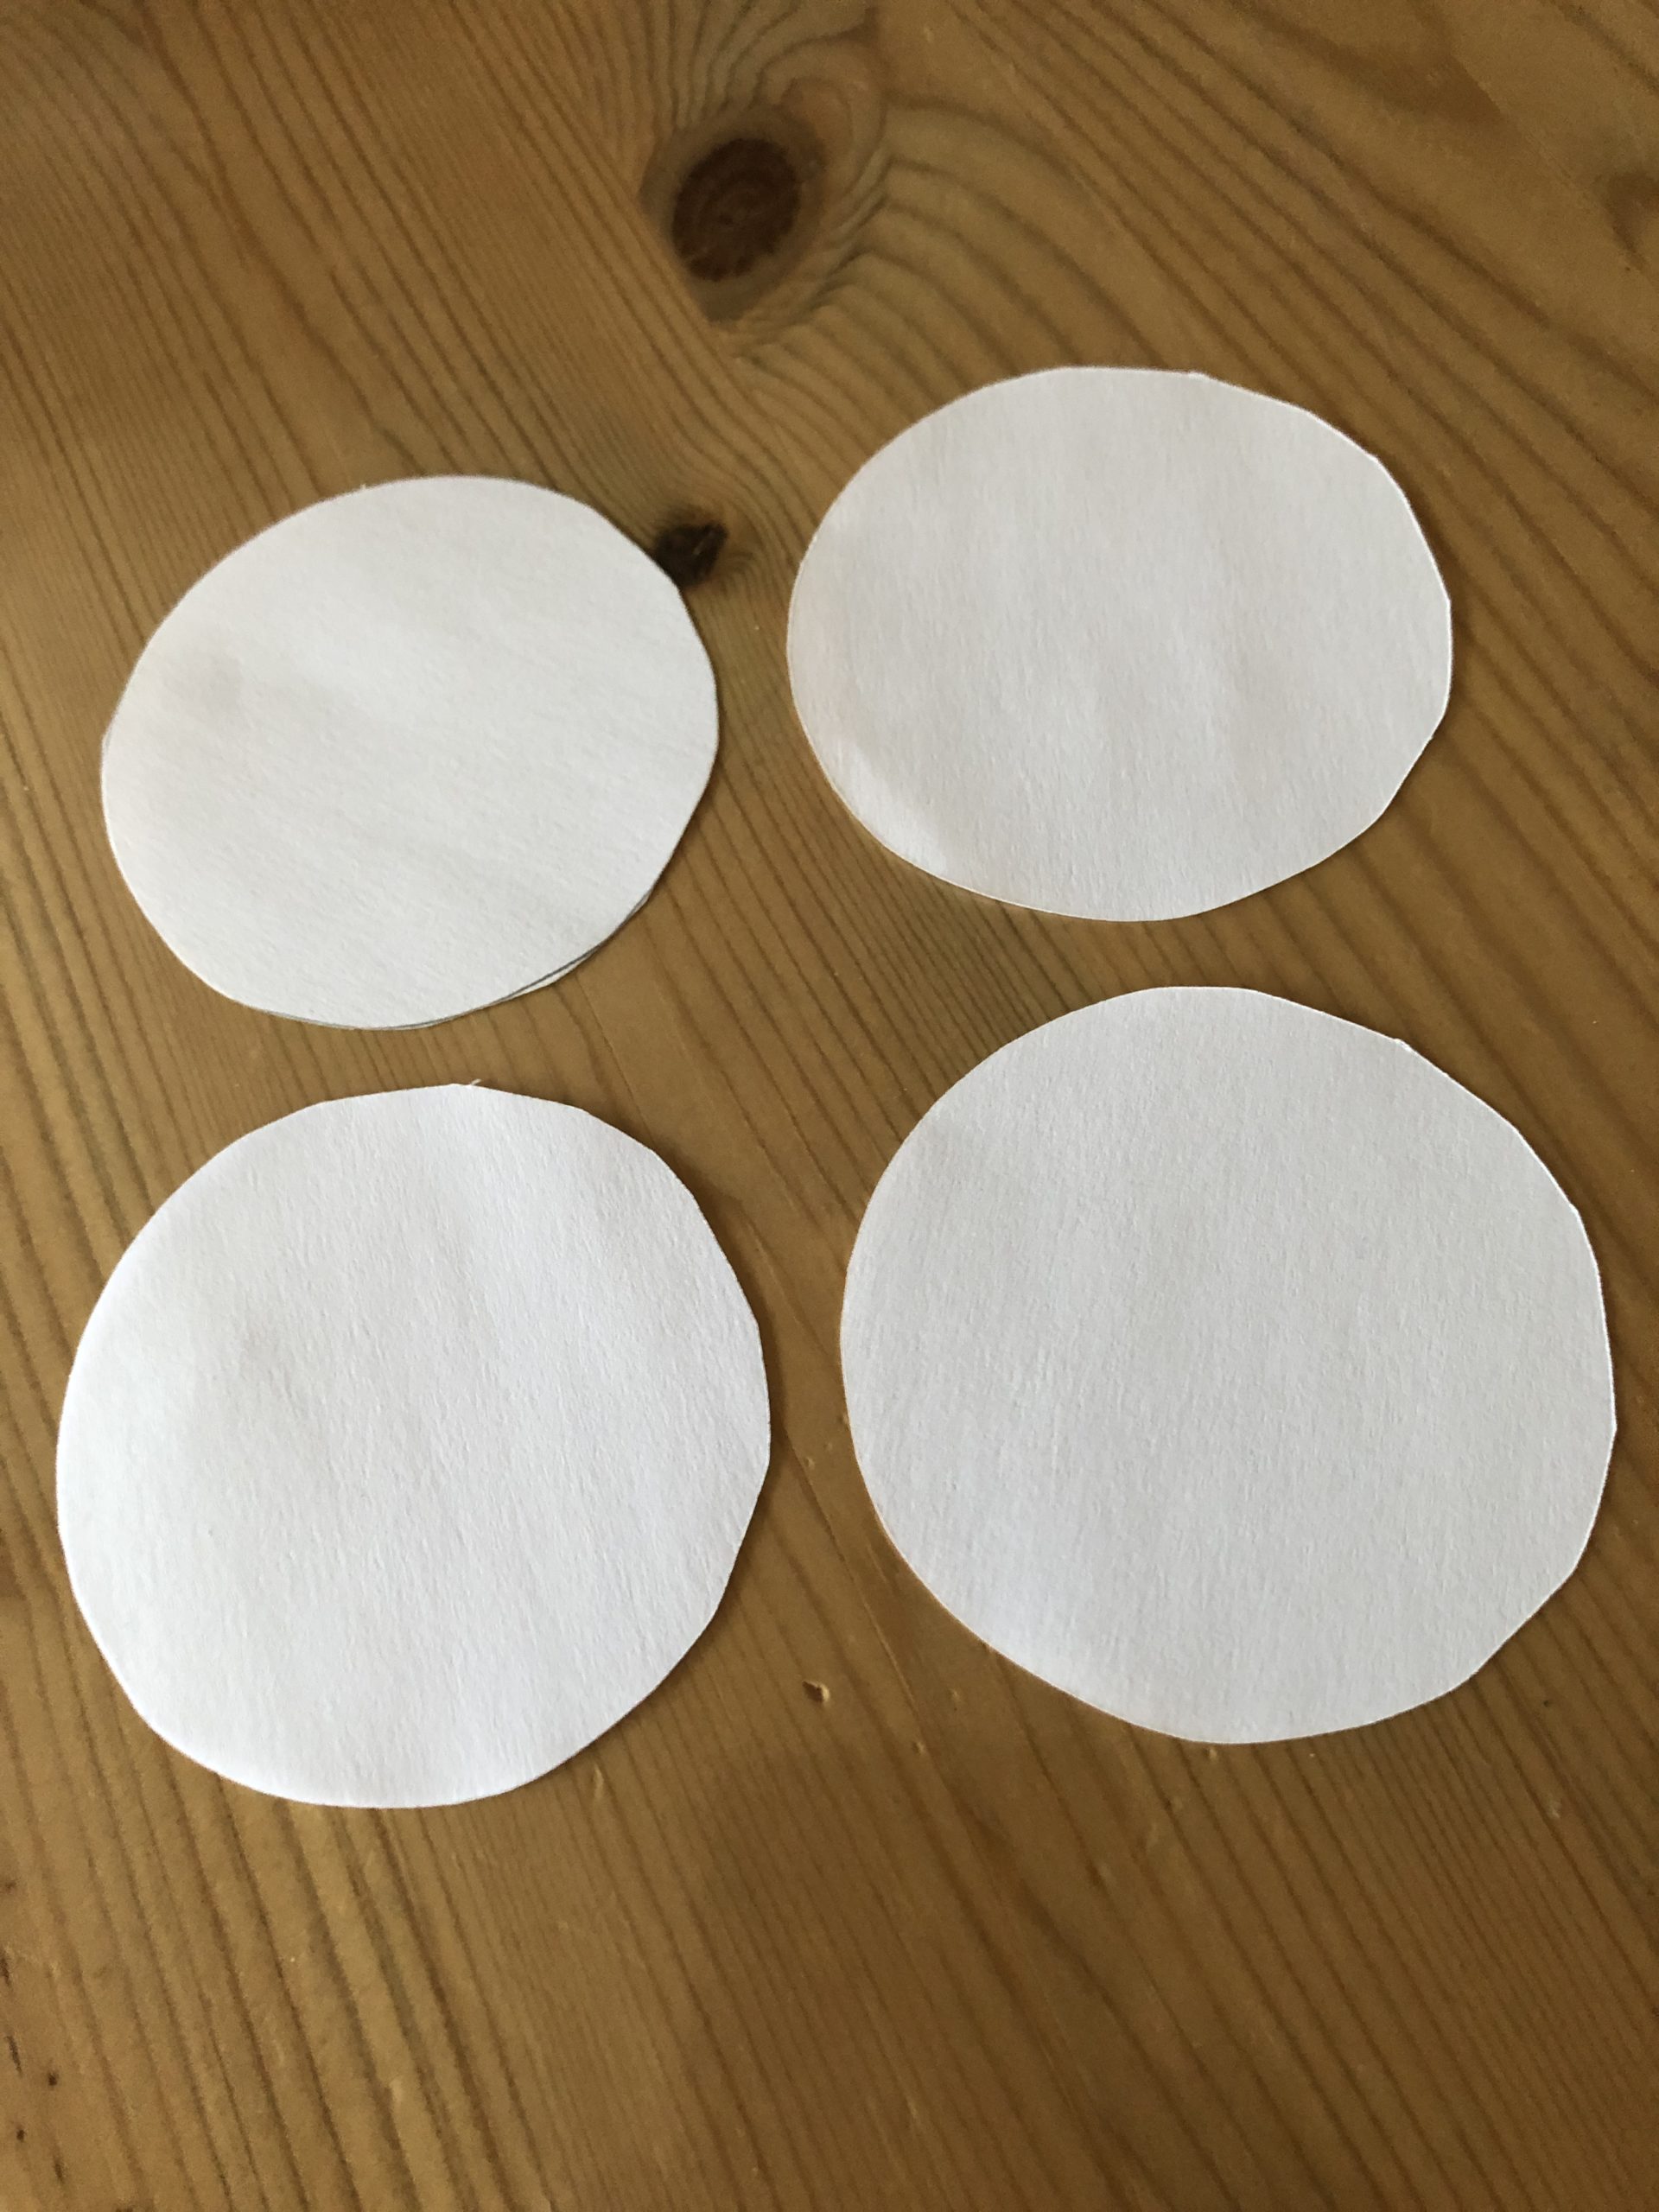 Bild zum Schritt 3 für das Bastel- und DIY-Abenteuer für Kinder: 'Dann malt vier Kreise auf und schneidet diese aus. Verwendet...'